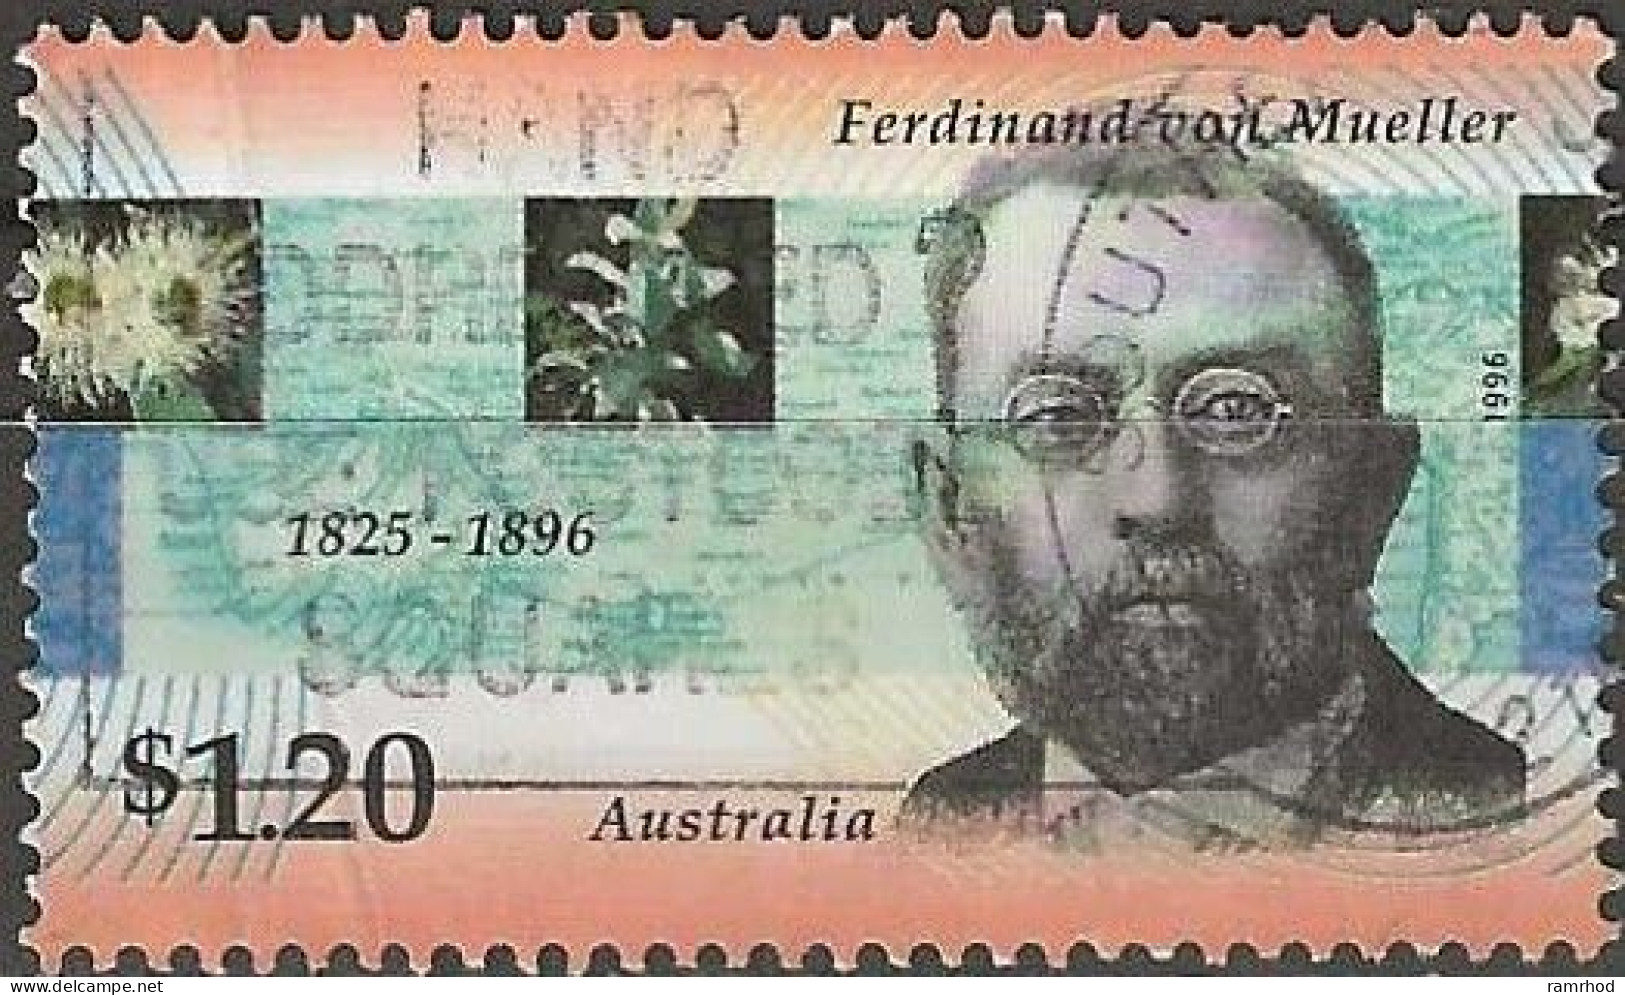 AUSTRALIA 1996 Death Centenary Of Ferdinand Von Mueller (botanist) - $1.20 Ferdinand Von Mueller FU - Gebraucht